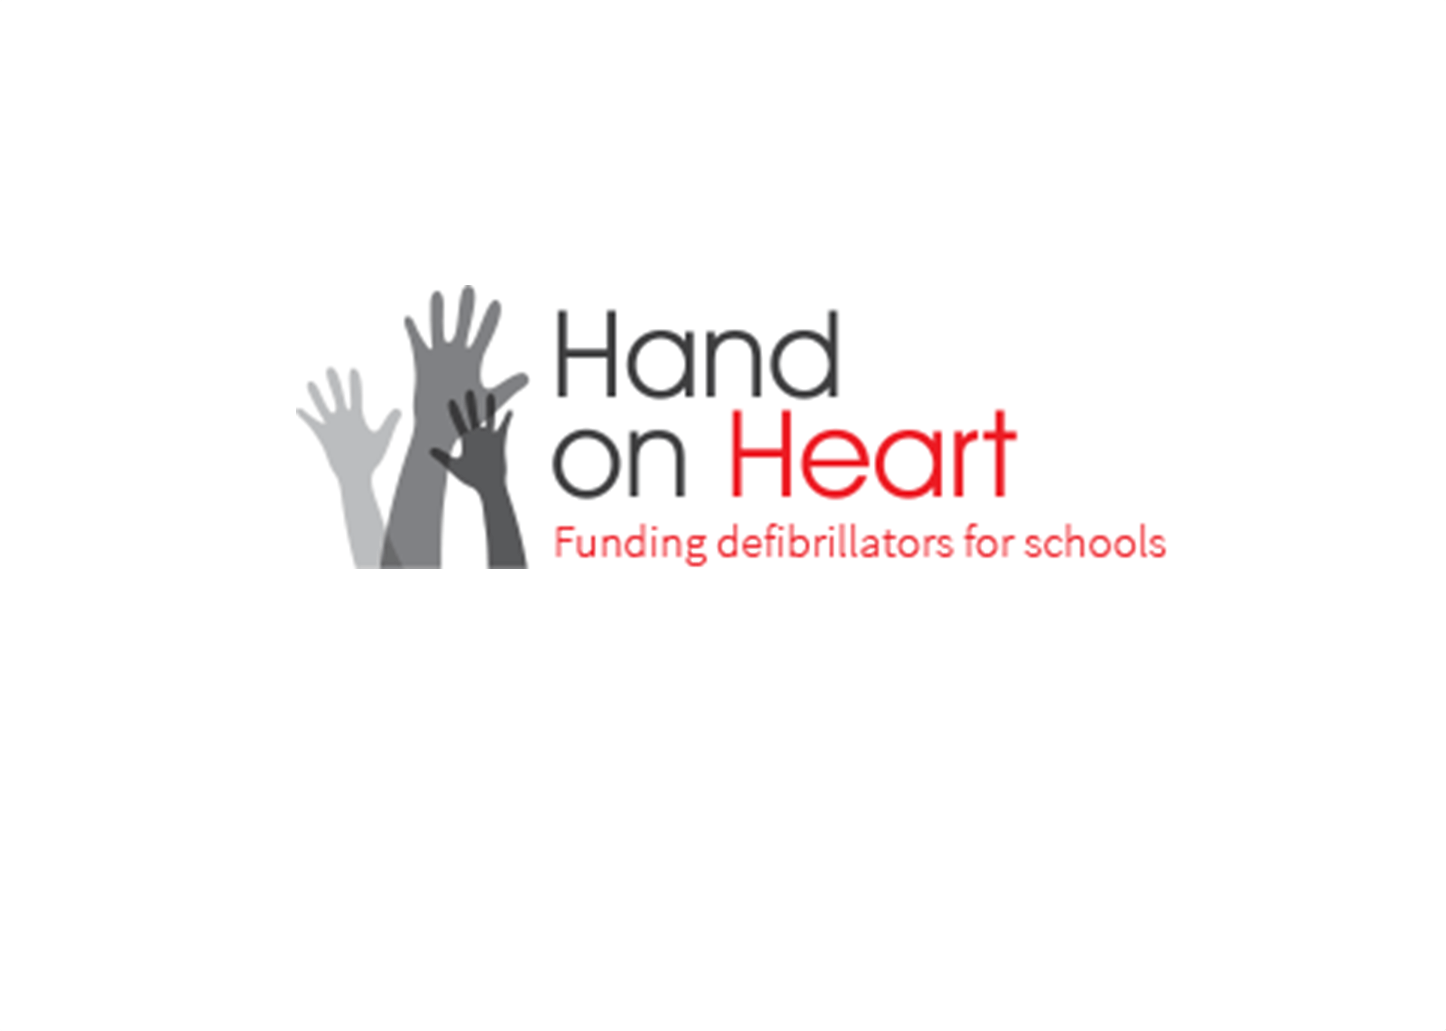 Hand and Heart Logo - Hand on Heart logo